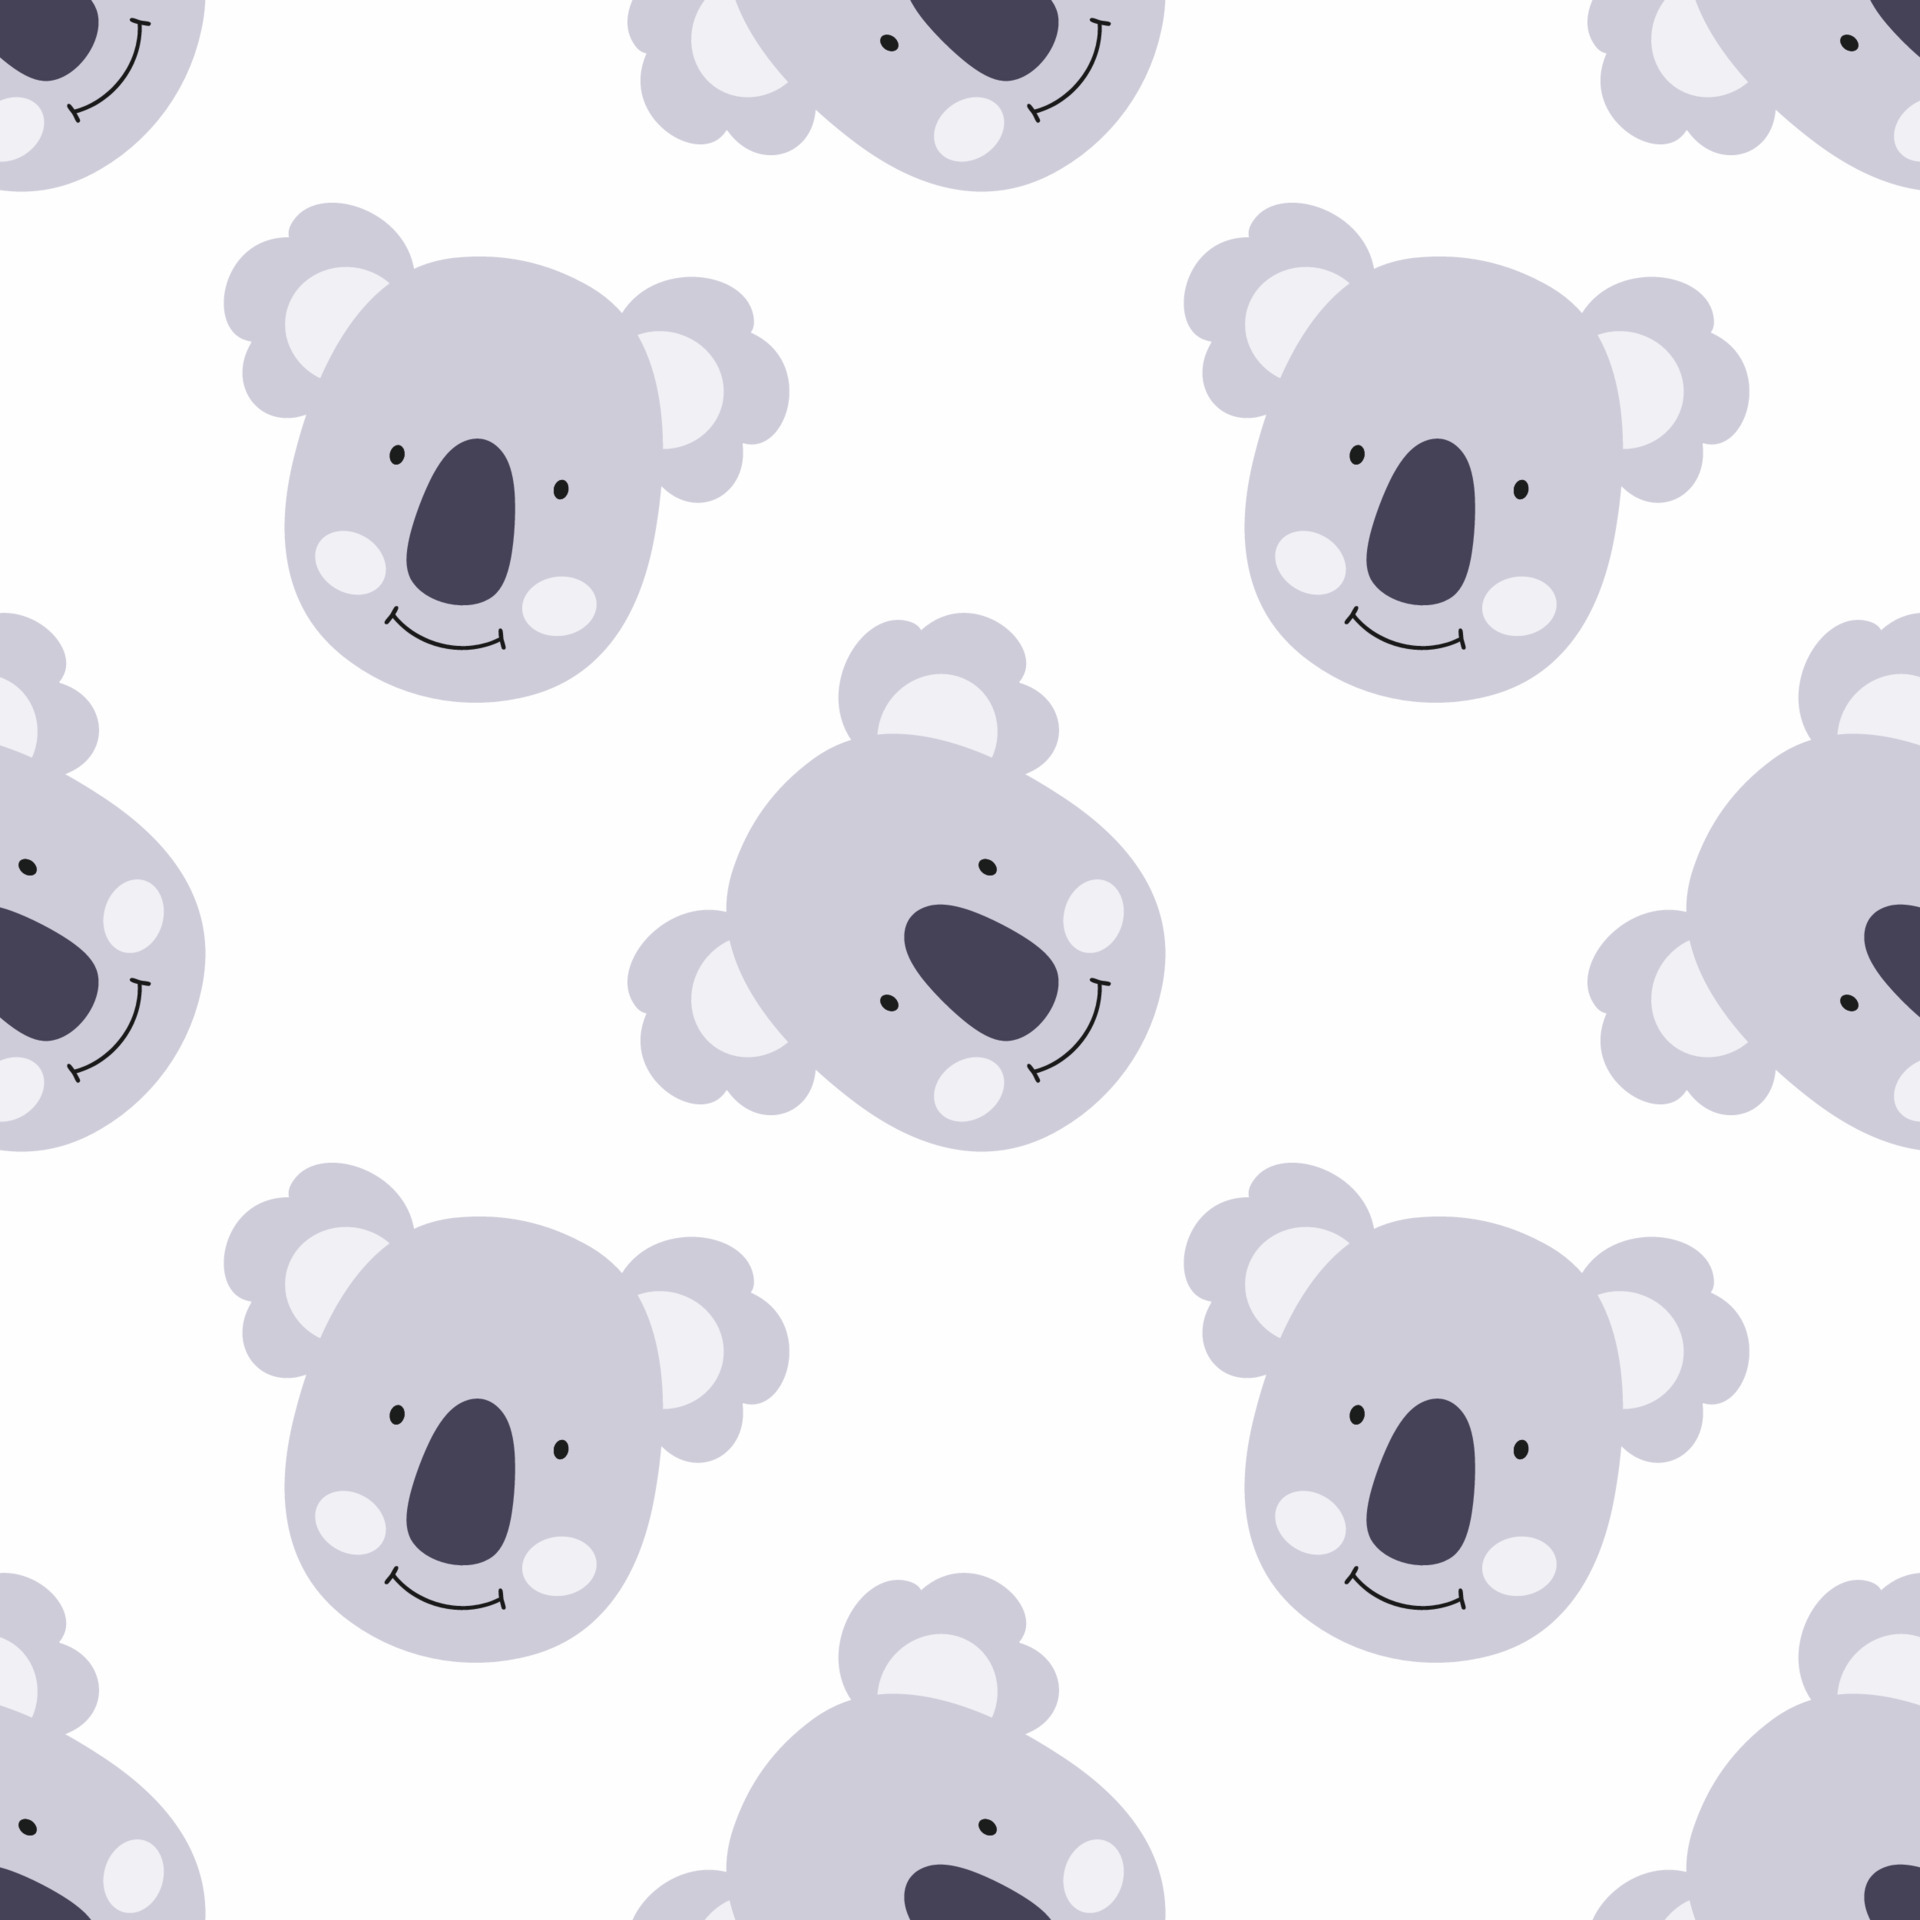 de patrones sin fisuras con lindos koalas para coser ropa de bebé e imprimir en tela. Papel pintado koala imprimir sobre tela, textiles y papel de embalaje. 4899655 Vector en